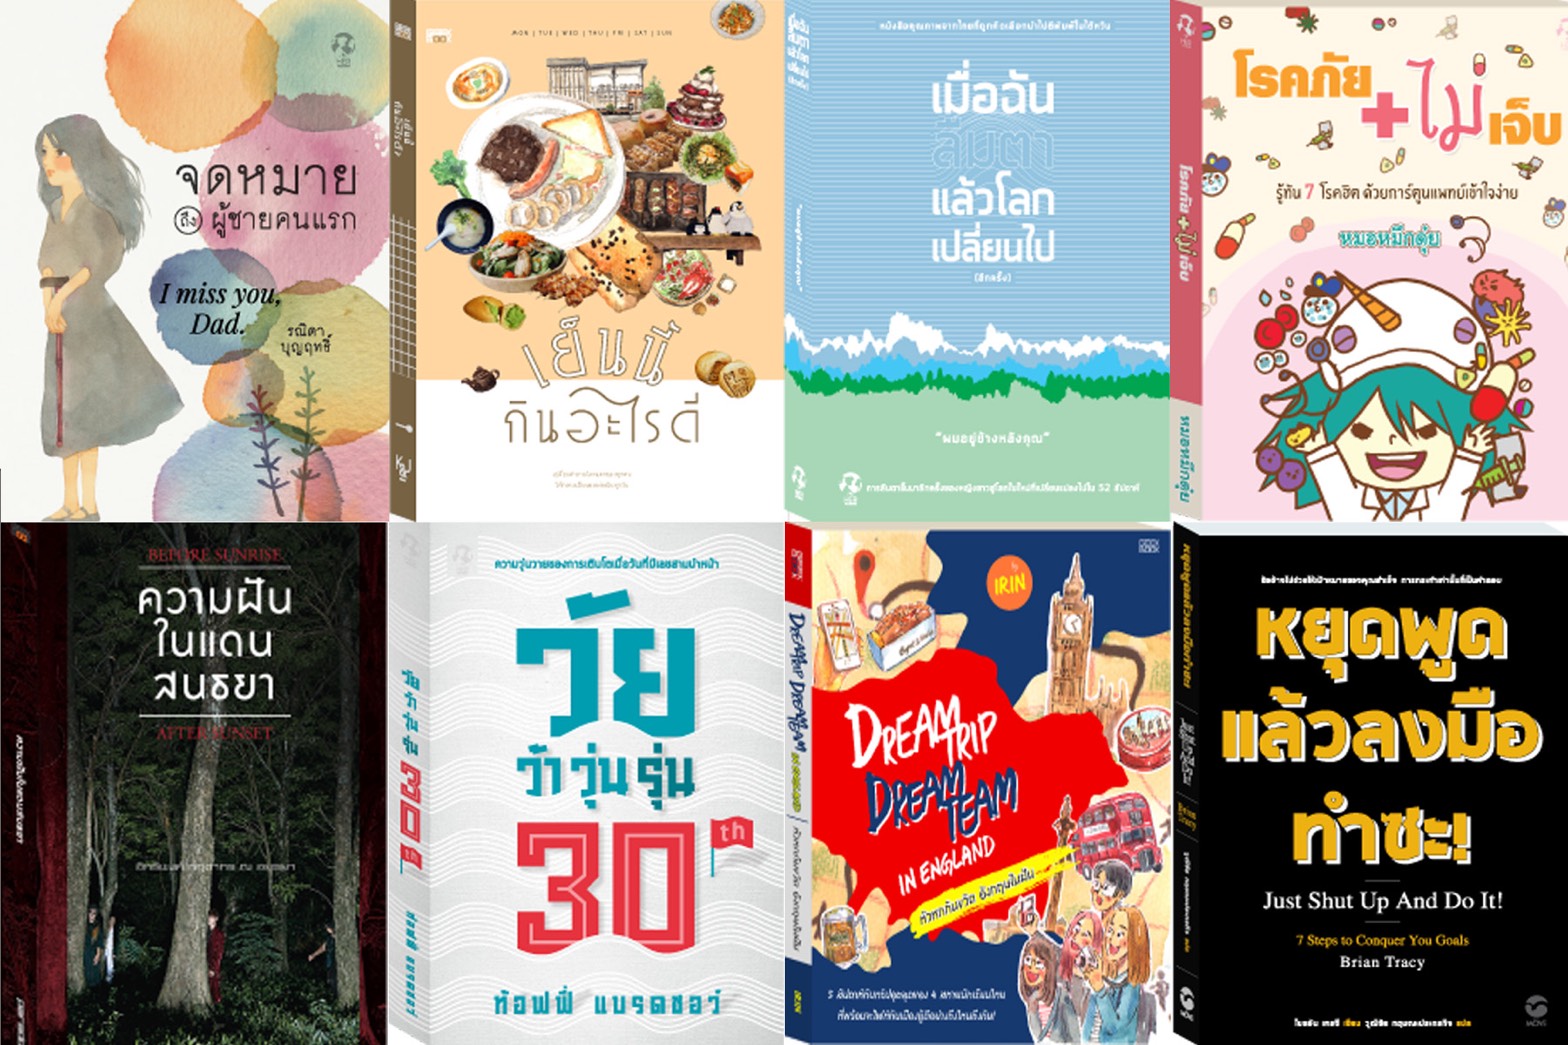 เปิดคลังหนังสือ สำนักพิมพ์ในเครือ โมโน กรุ๊ป ชวนคนไทยเยียวยาหัวใจด้วยการอ่านหนังสืออยู่บ้าน